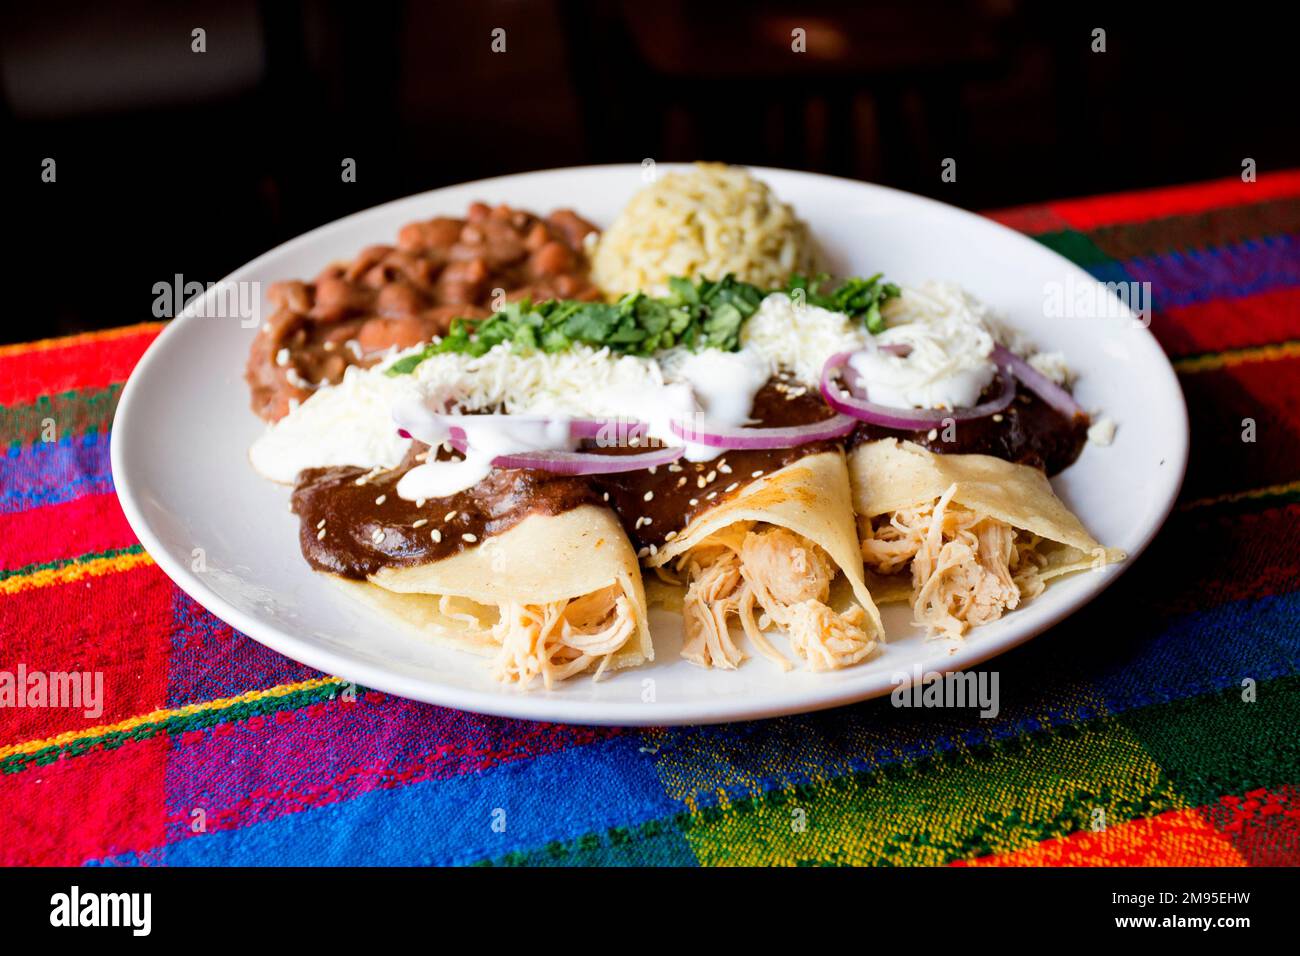 Die Fajita ist eines der traditionellsten und beliebtesten Gerichte der Tex-Mex-Küche. Es besteht aus Fleisch, das auf dem Grill geröstet und in Streifen geschnitten wird Stockfoto